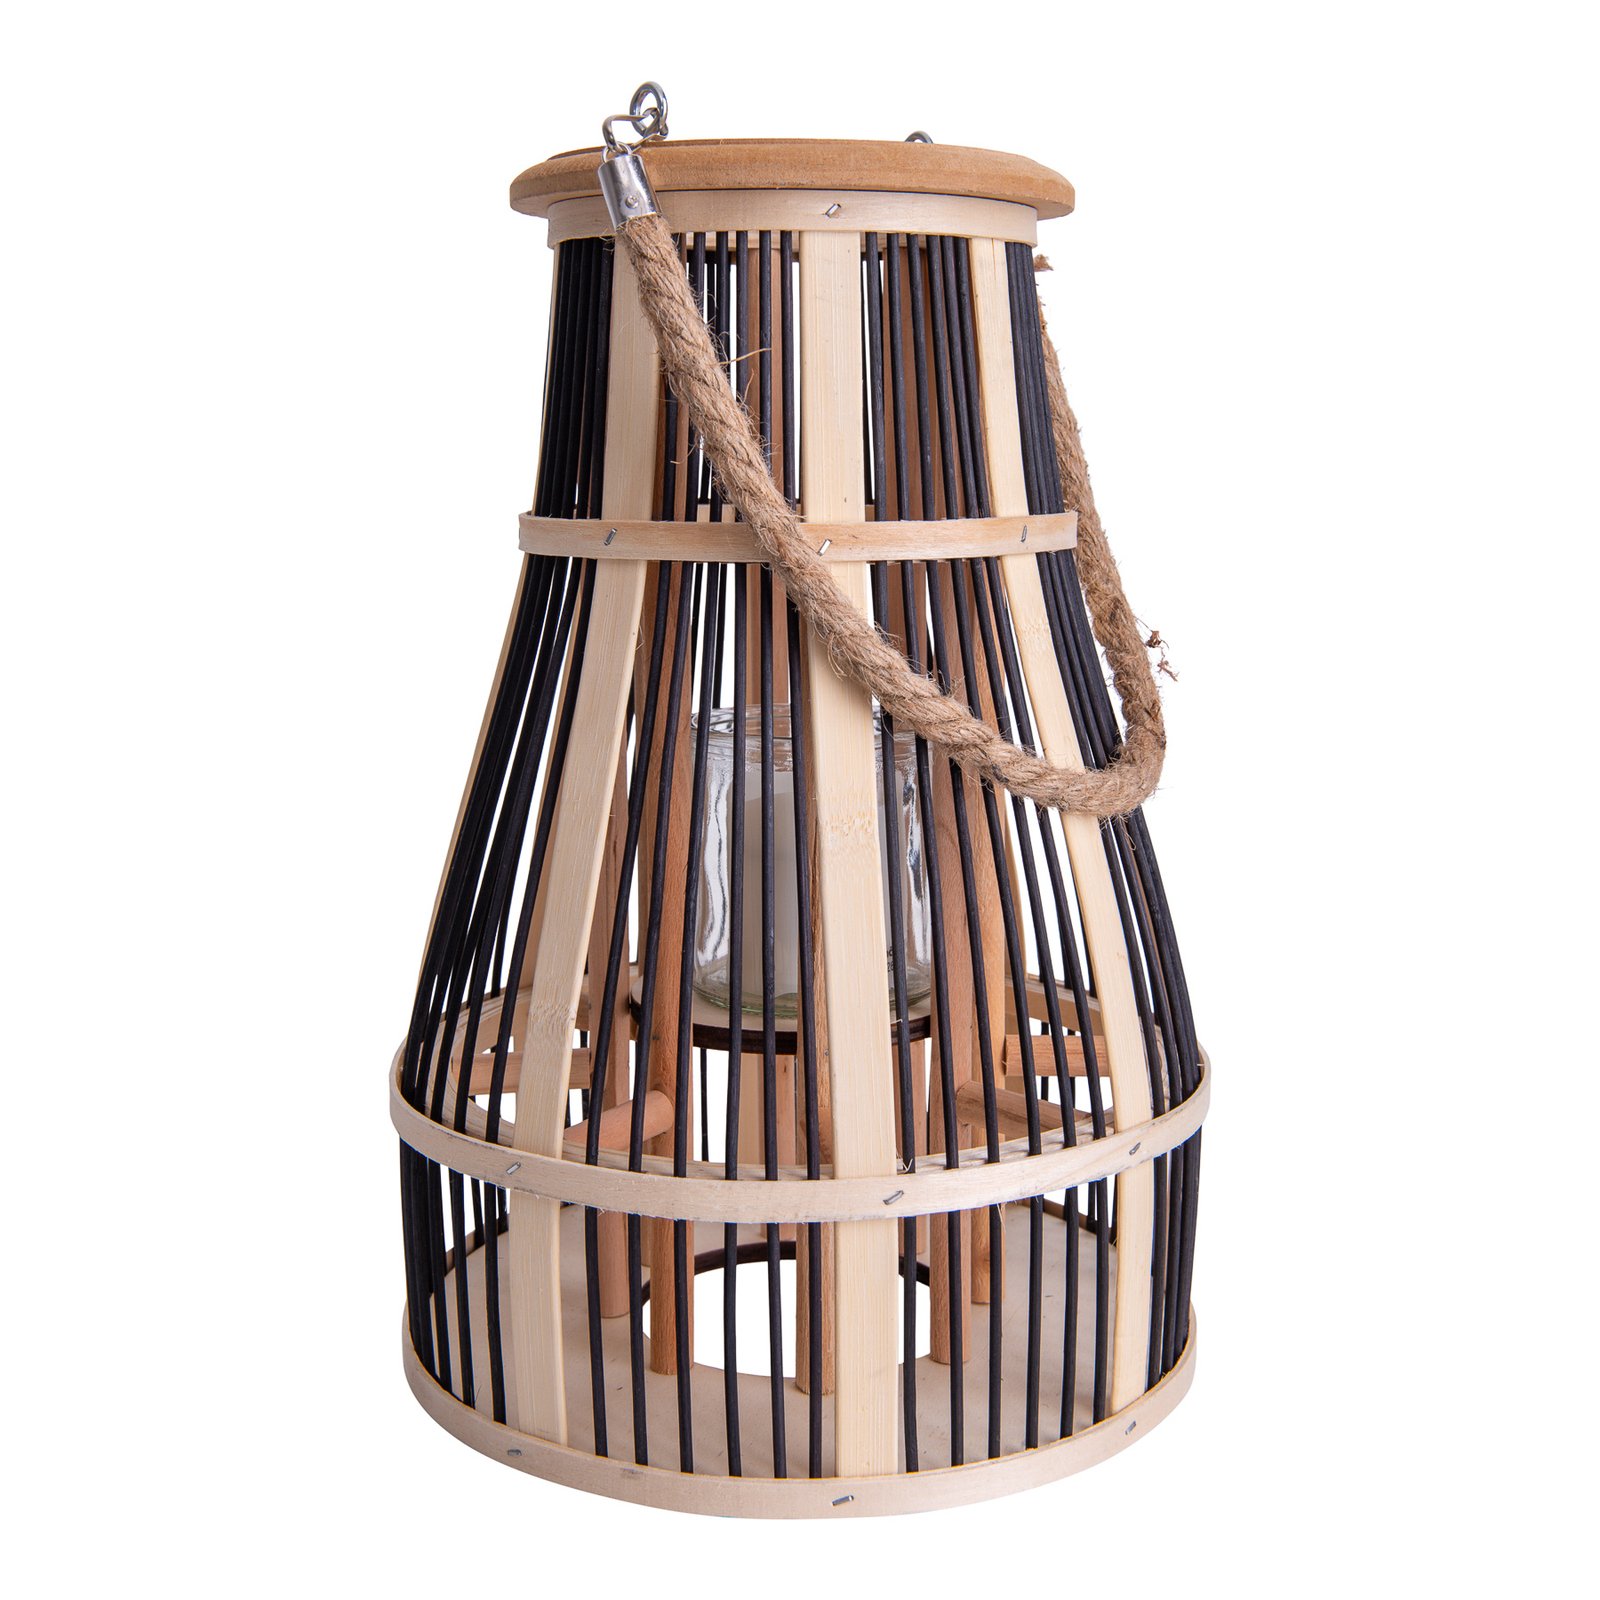 Basket LED solar light, 34 cm, black/natural